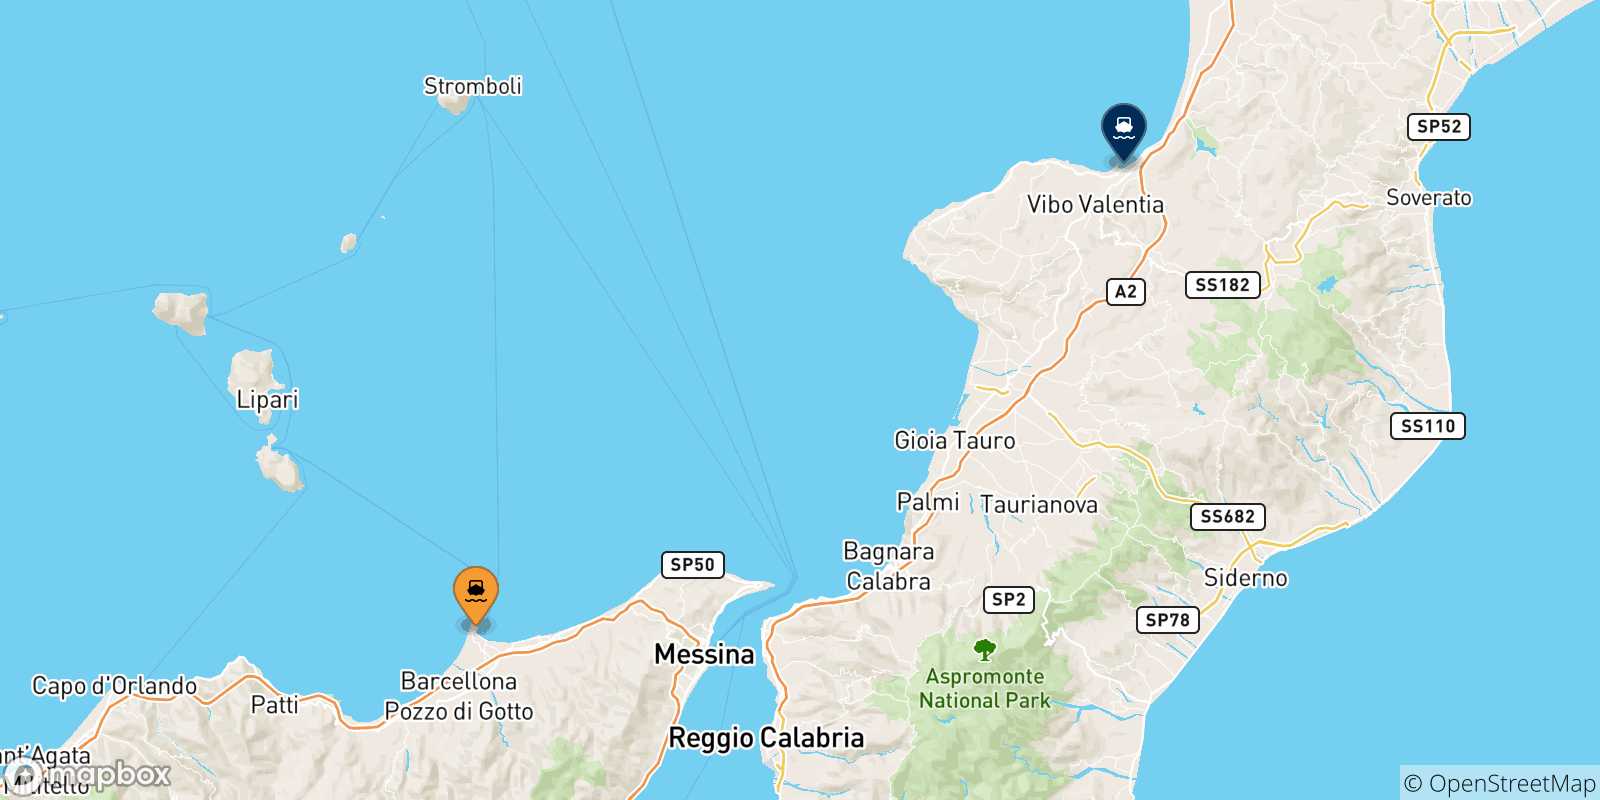 Mappa delle possibili rotte tra la Sicilia e Vibo Valentia